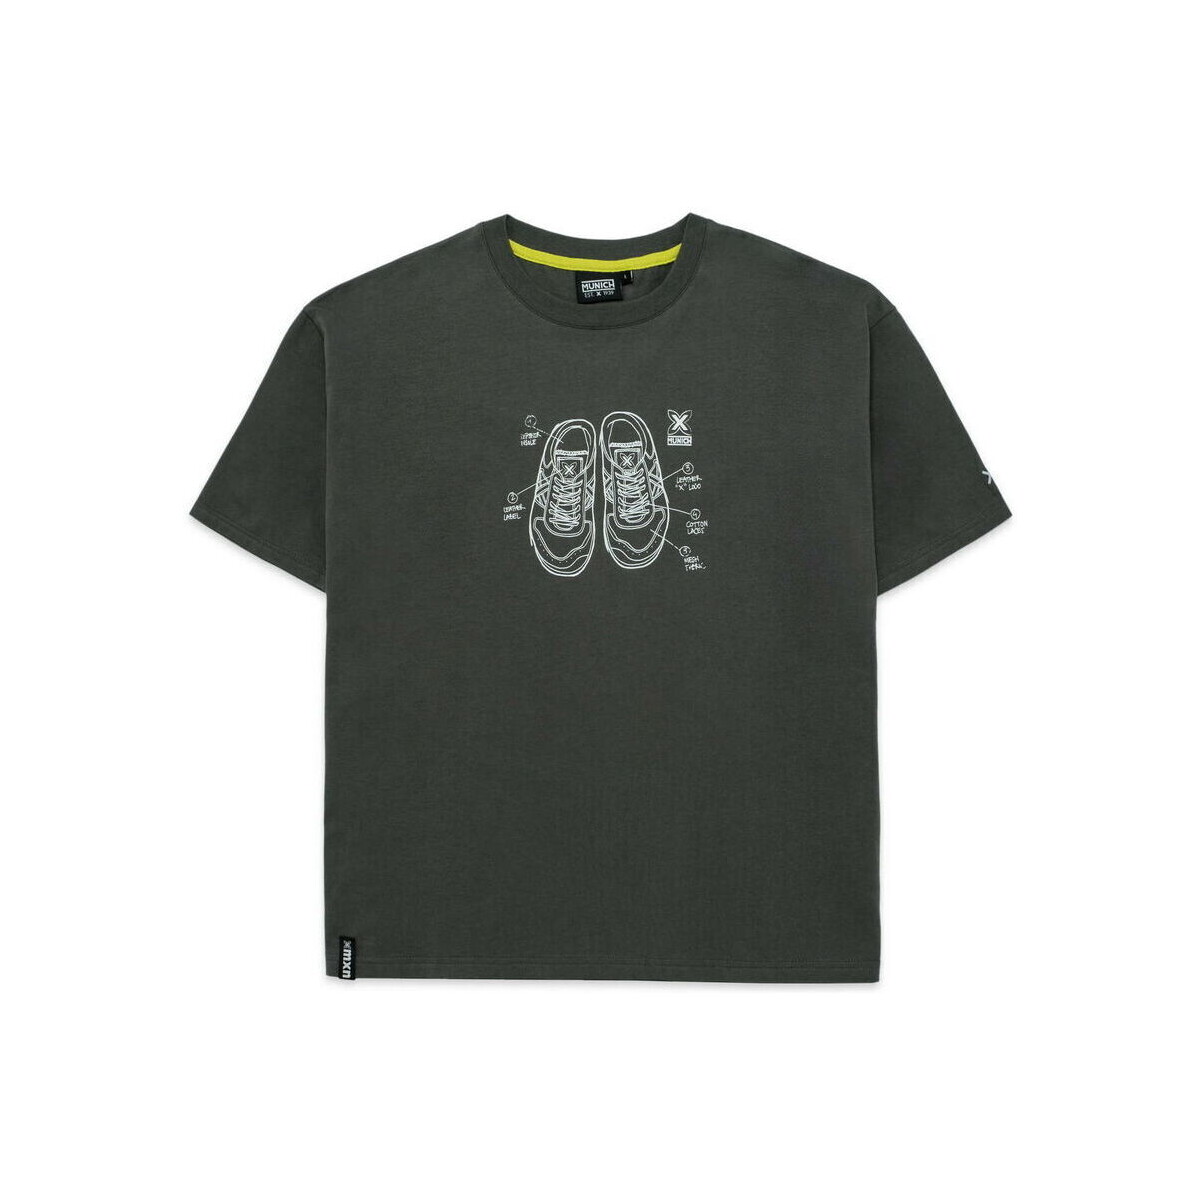 tekstylia Męskie T-shirty z krótkim rękawem Munich T-shirt sneakers Szary